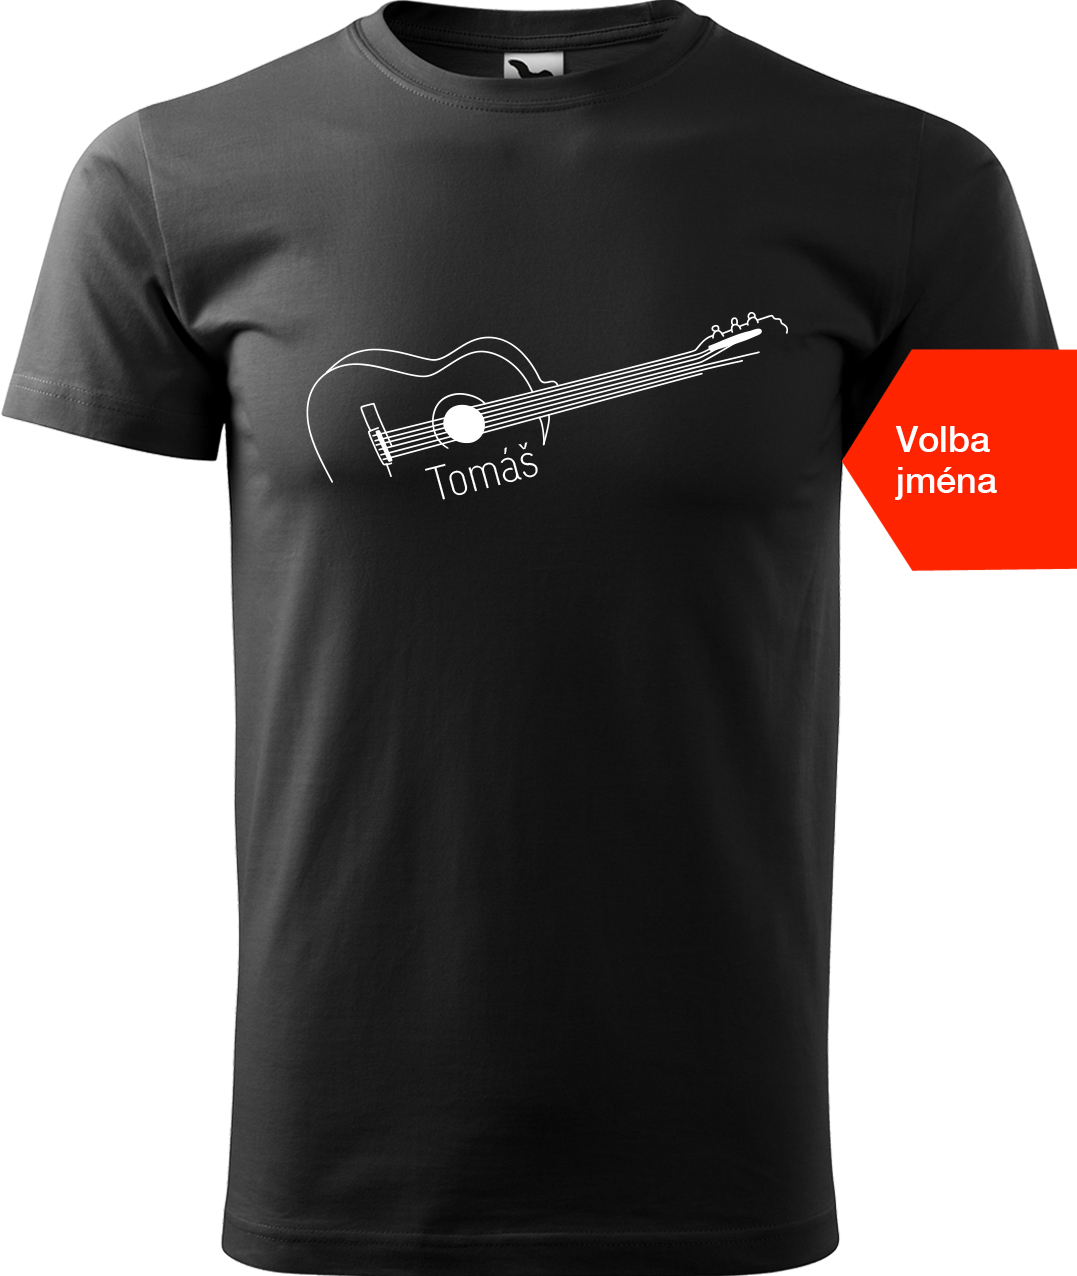 Pánské tričko s kytarou se jménem - Stylizovaná kytara Velikost: S, Barva: Černá (01), Střih: pánský